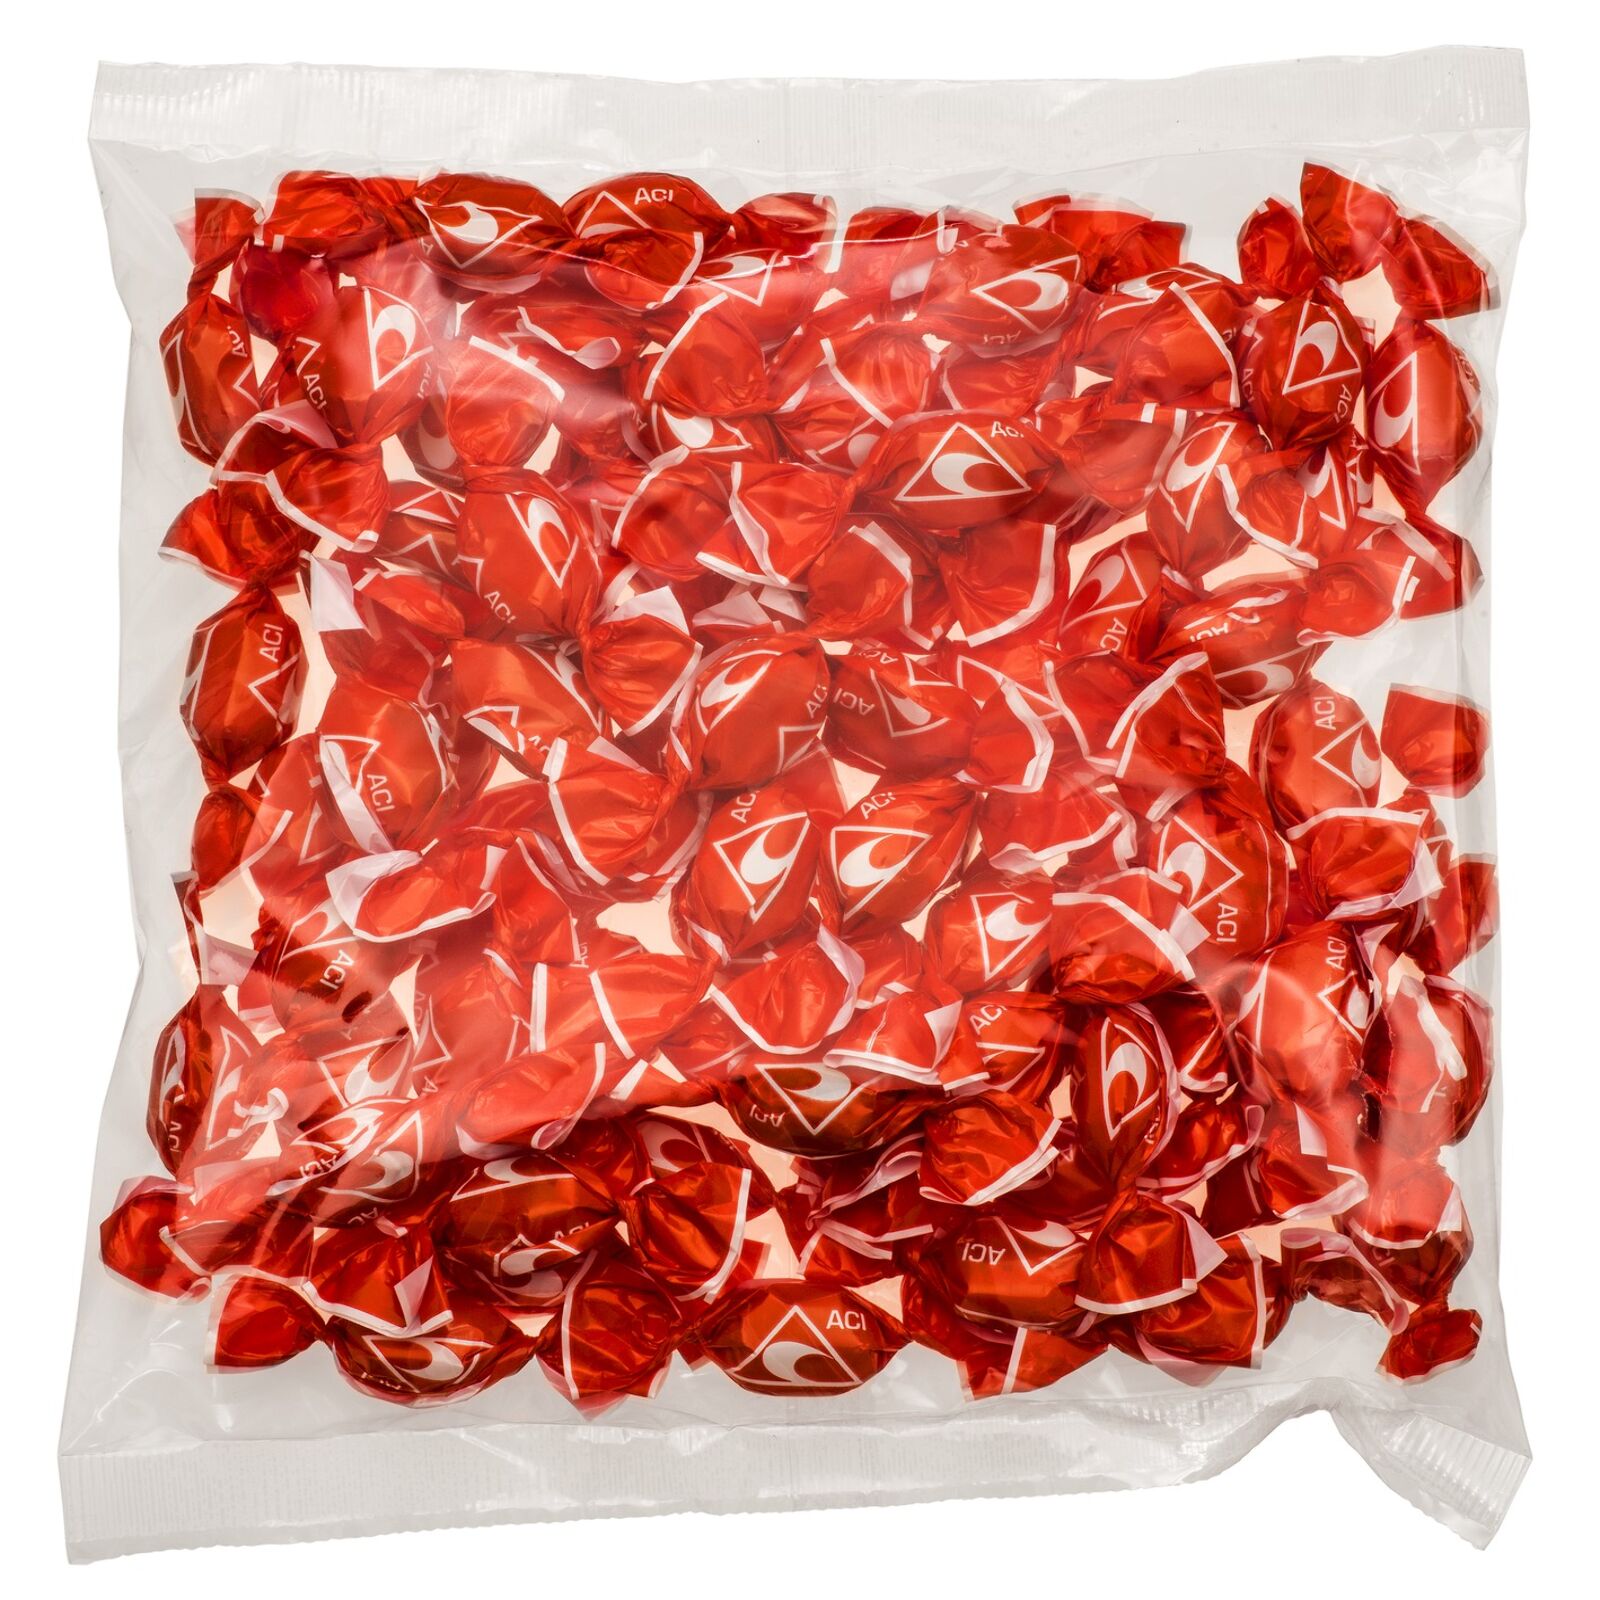 Obrázek produktu reklamní bonbony s logem ACI - ovocný mix - balení 250 g